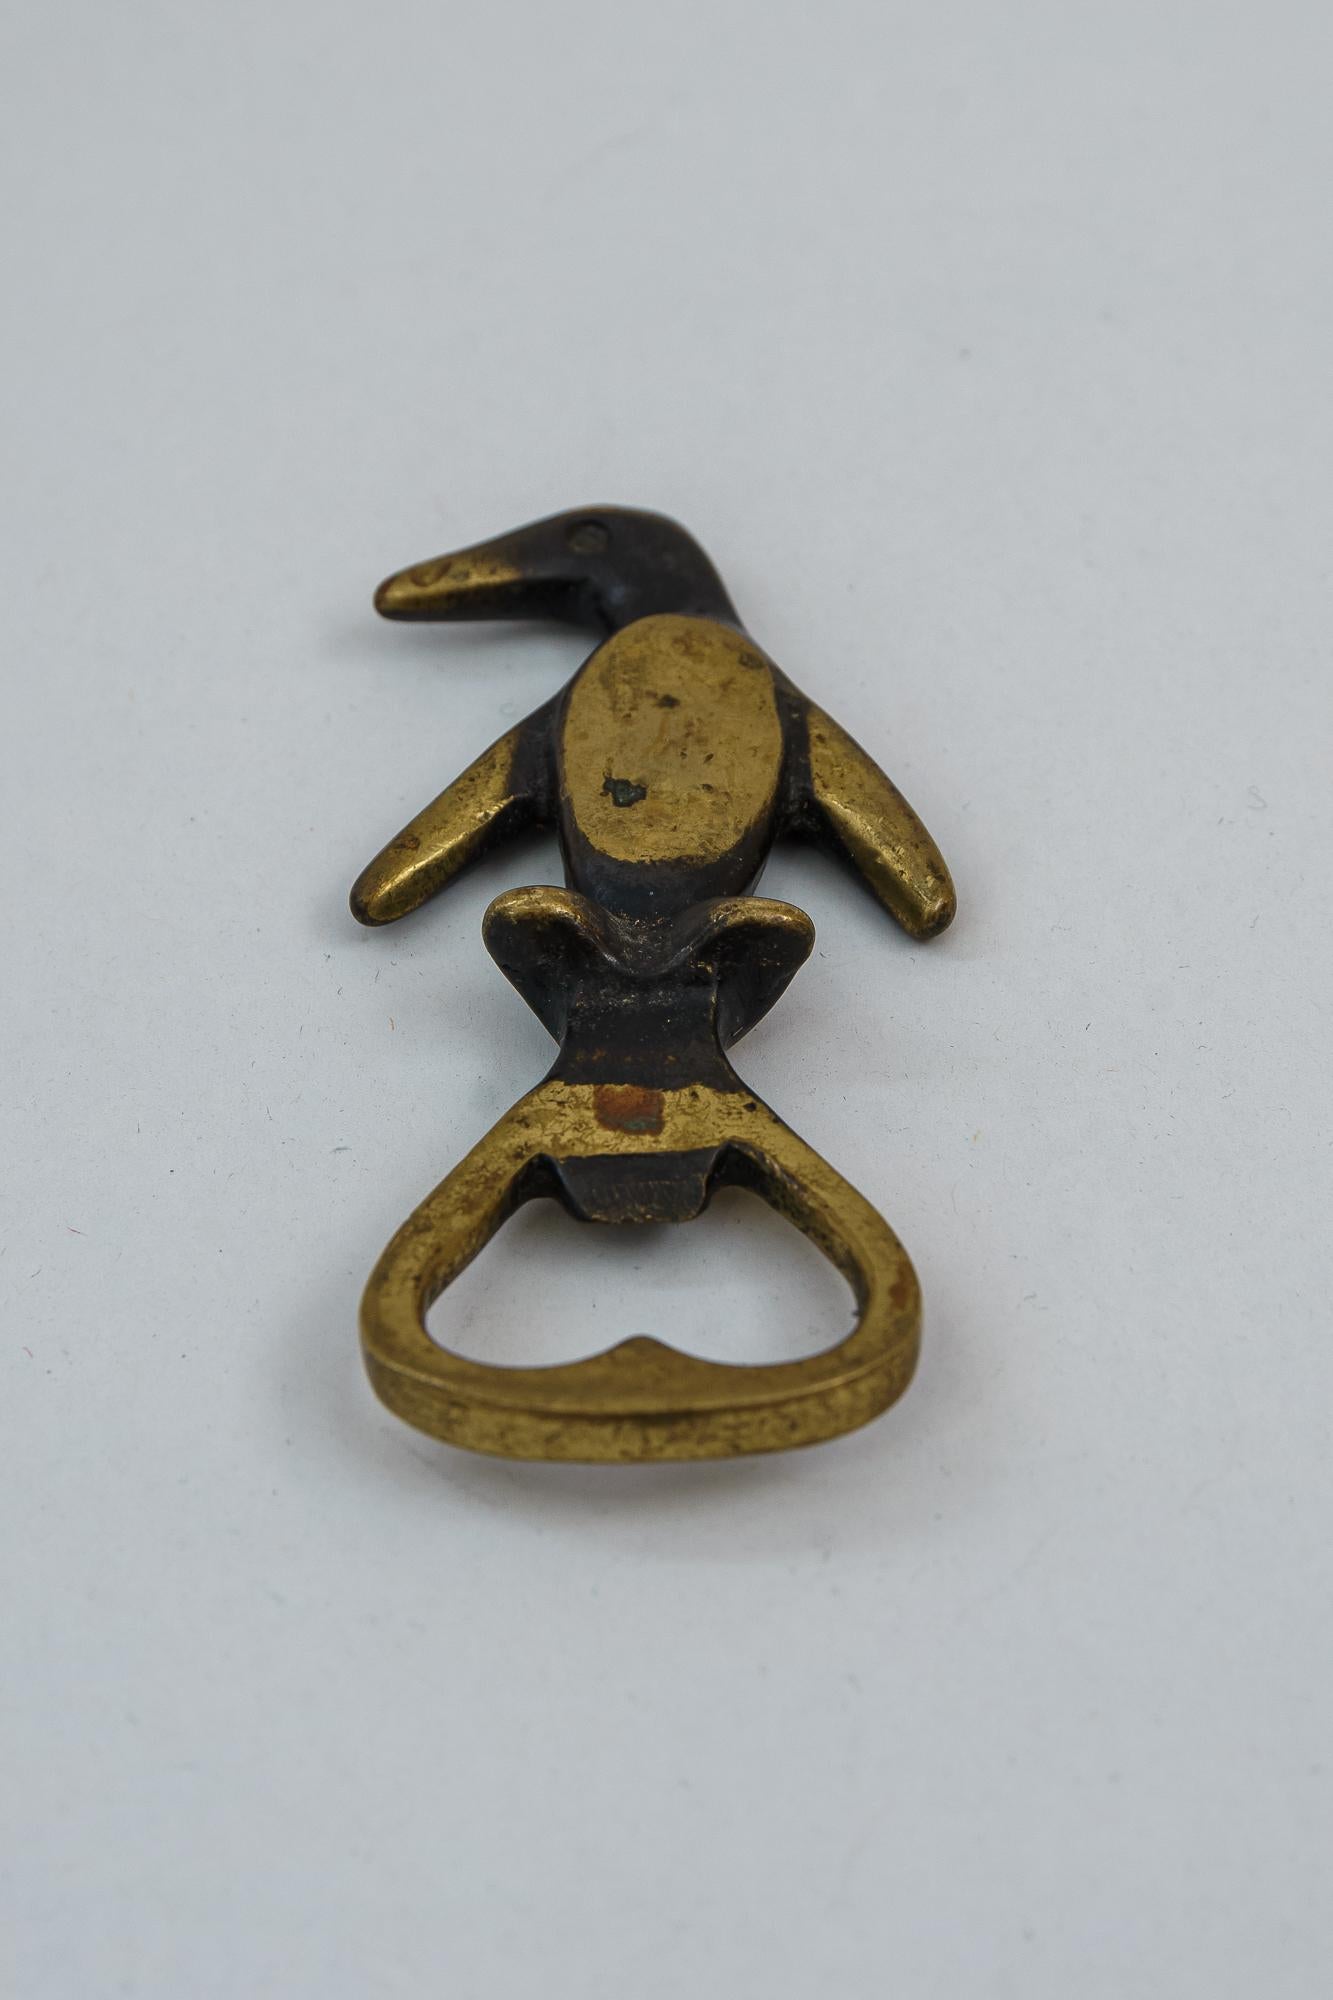 Ouvre-bouteille représentant un pingouin par Walter Bosse, vers les années 1950.
État d'origine
(J B).